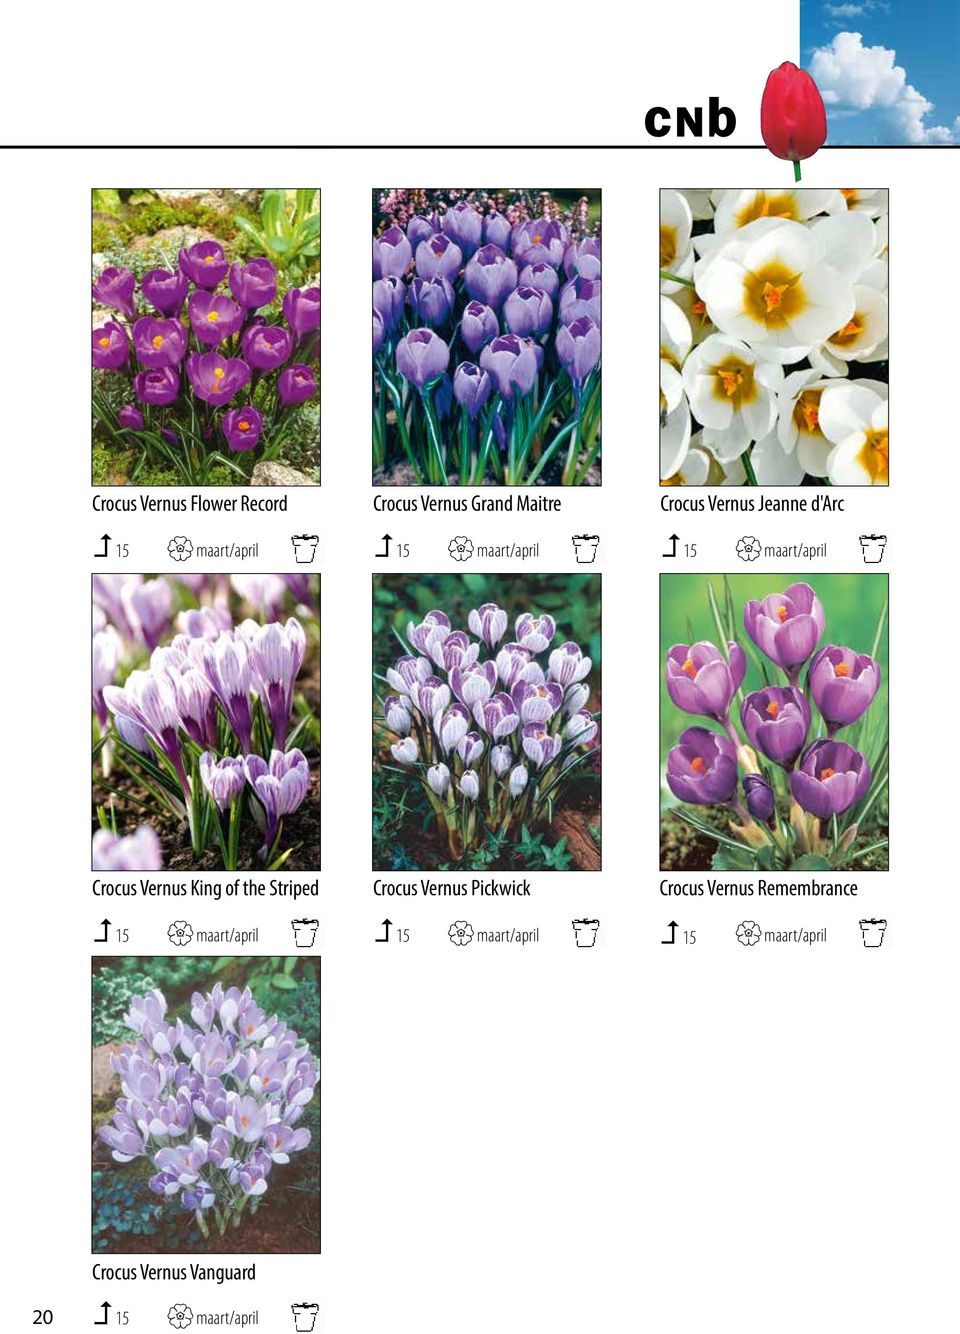 foto s 15 kunt u bij maart/april opvragen. Van sommige 15 cultivars maart/april heeft ook promotiemateriaal.